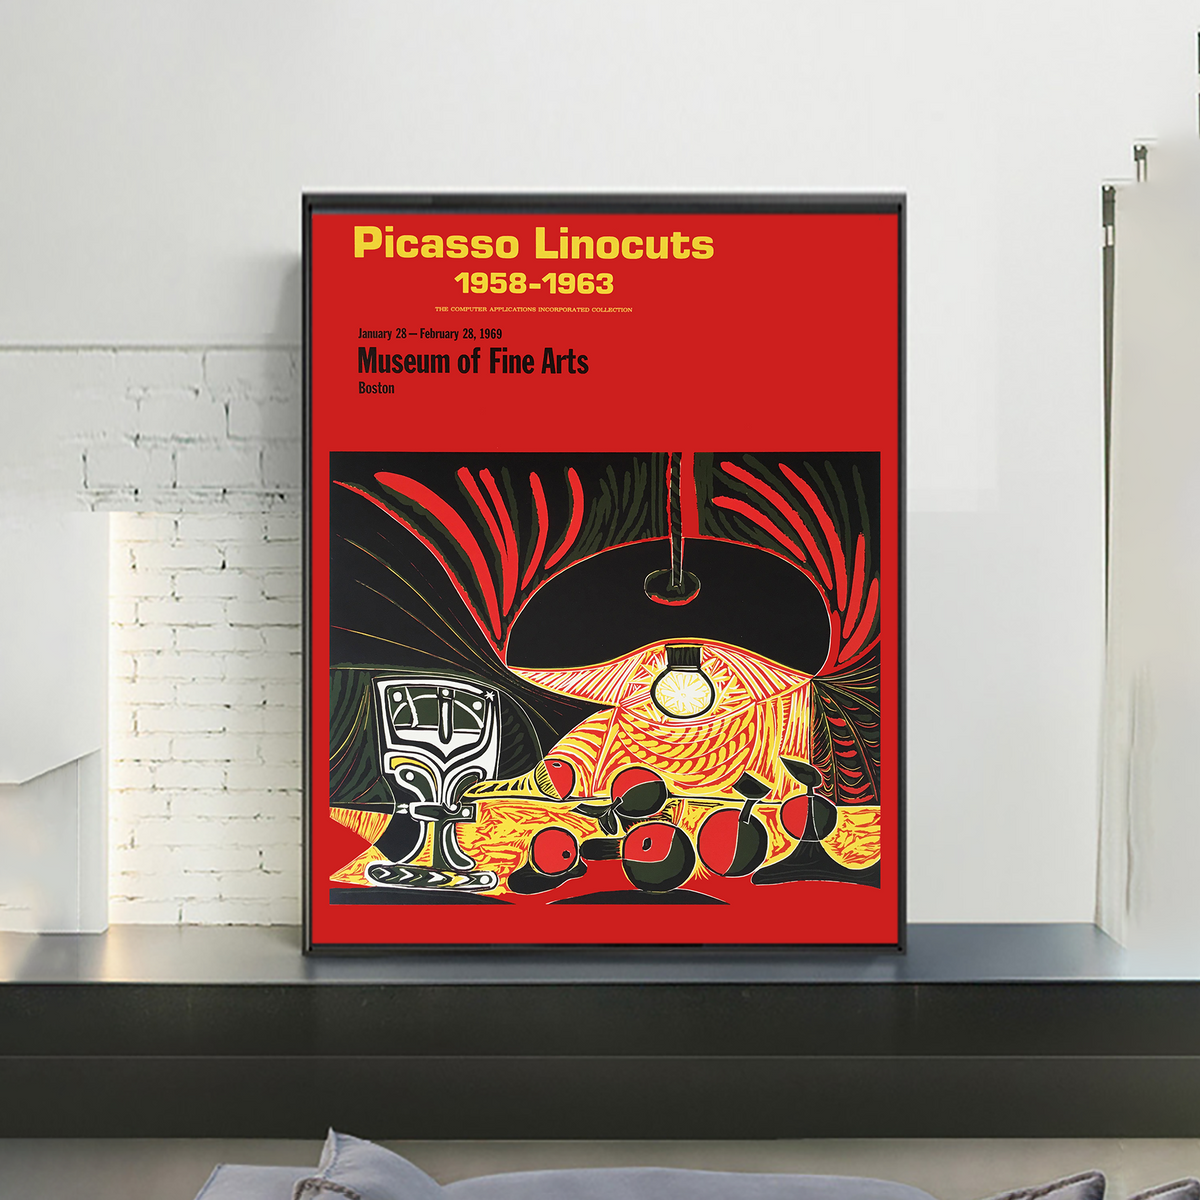 ablo Picasso,_Picasso Linocuts 1958-1963_